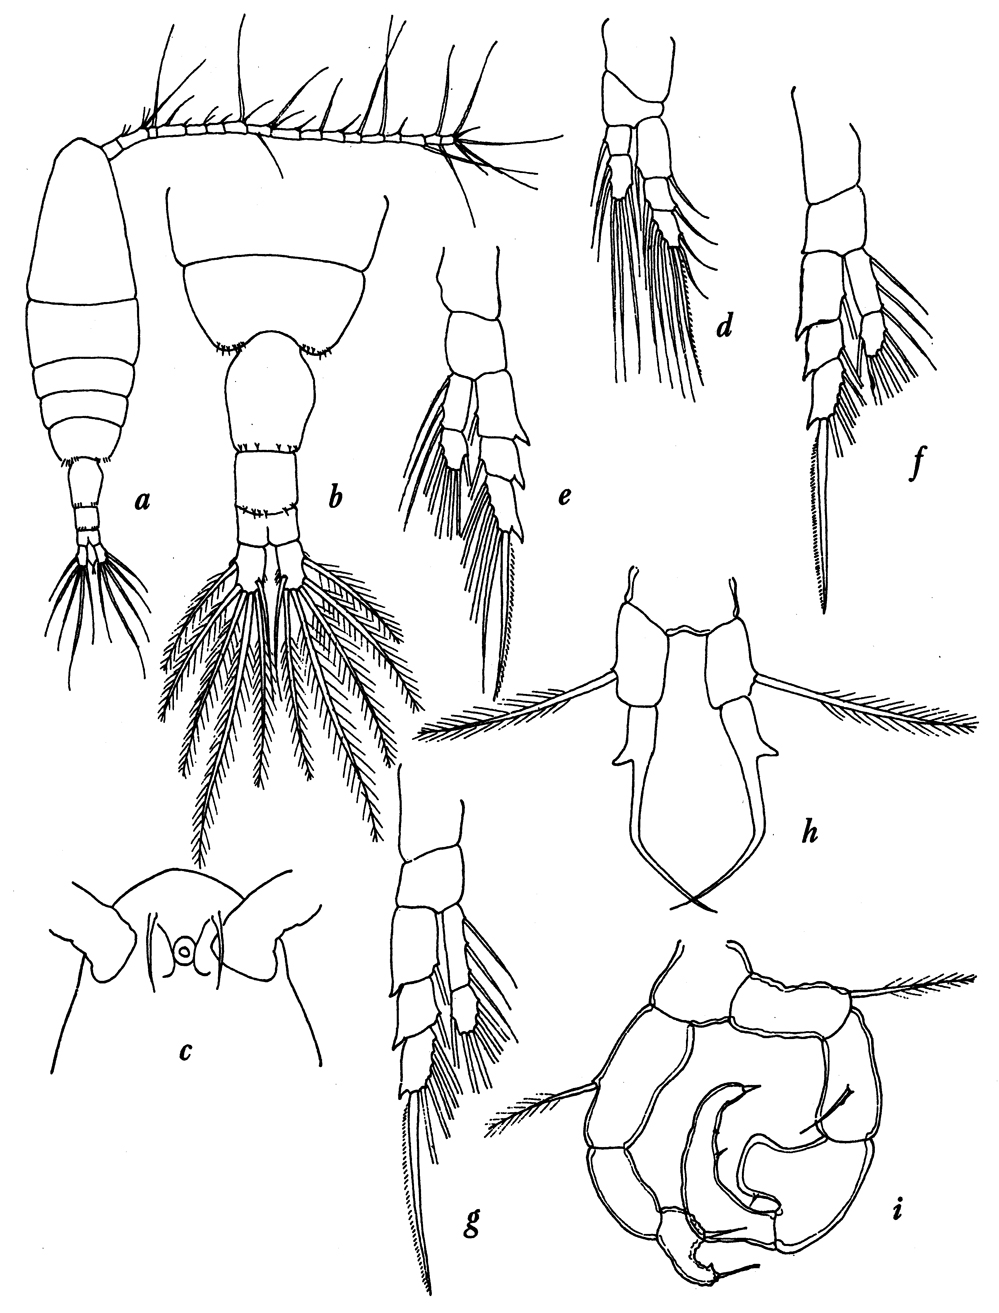 Species Acartia (Acanthacartia) tsuensis - Plate 1 of morphological figures